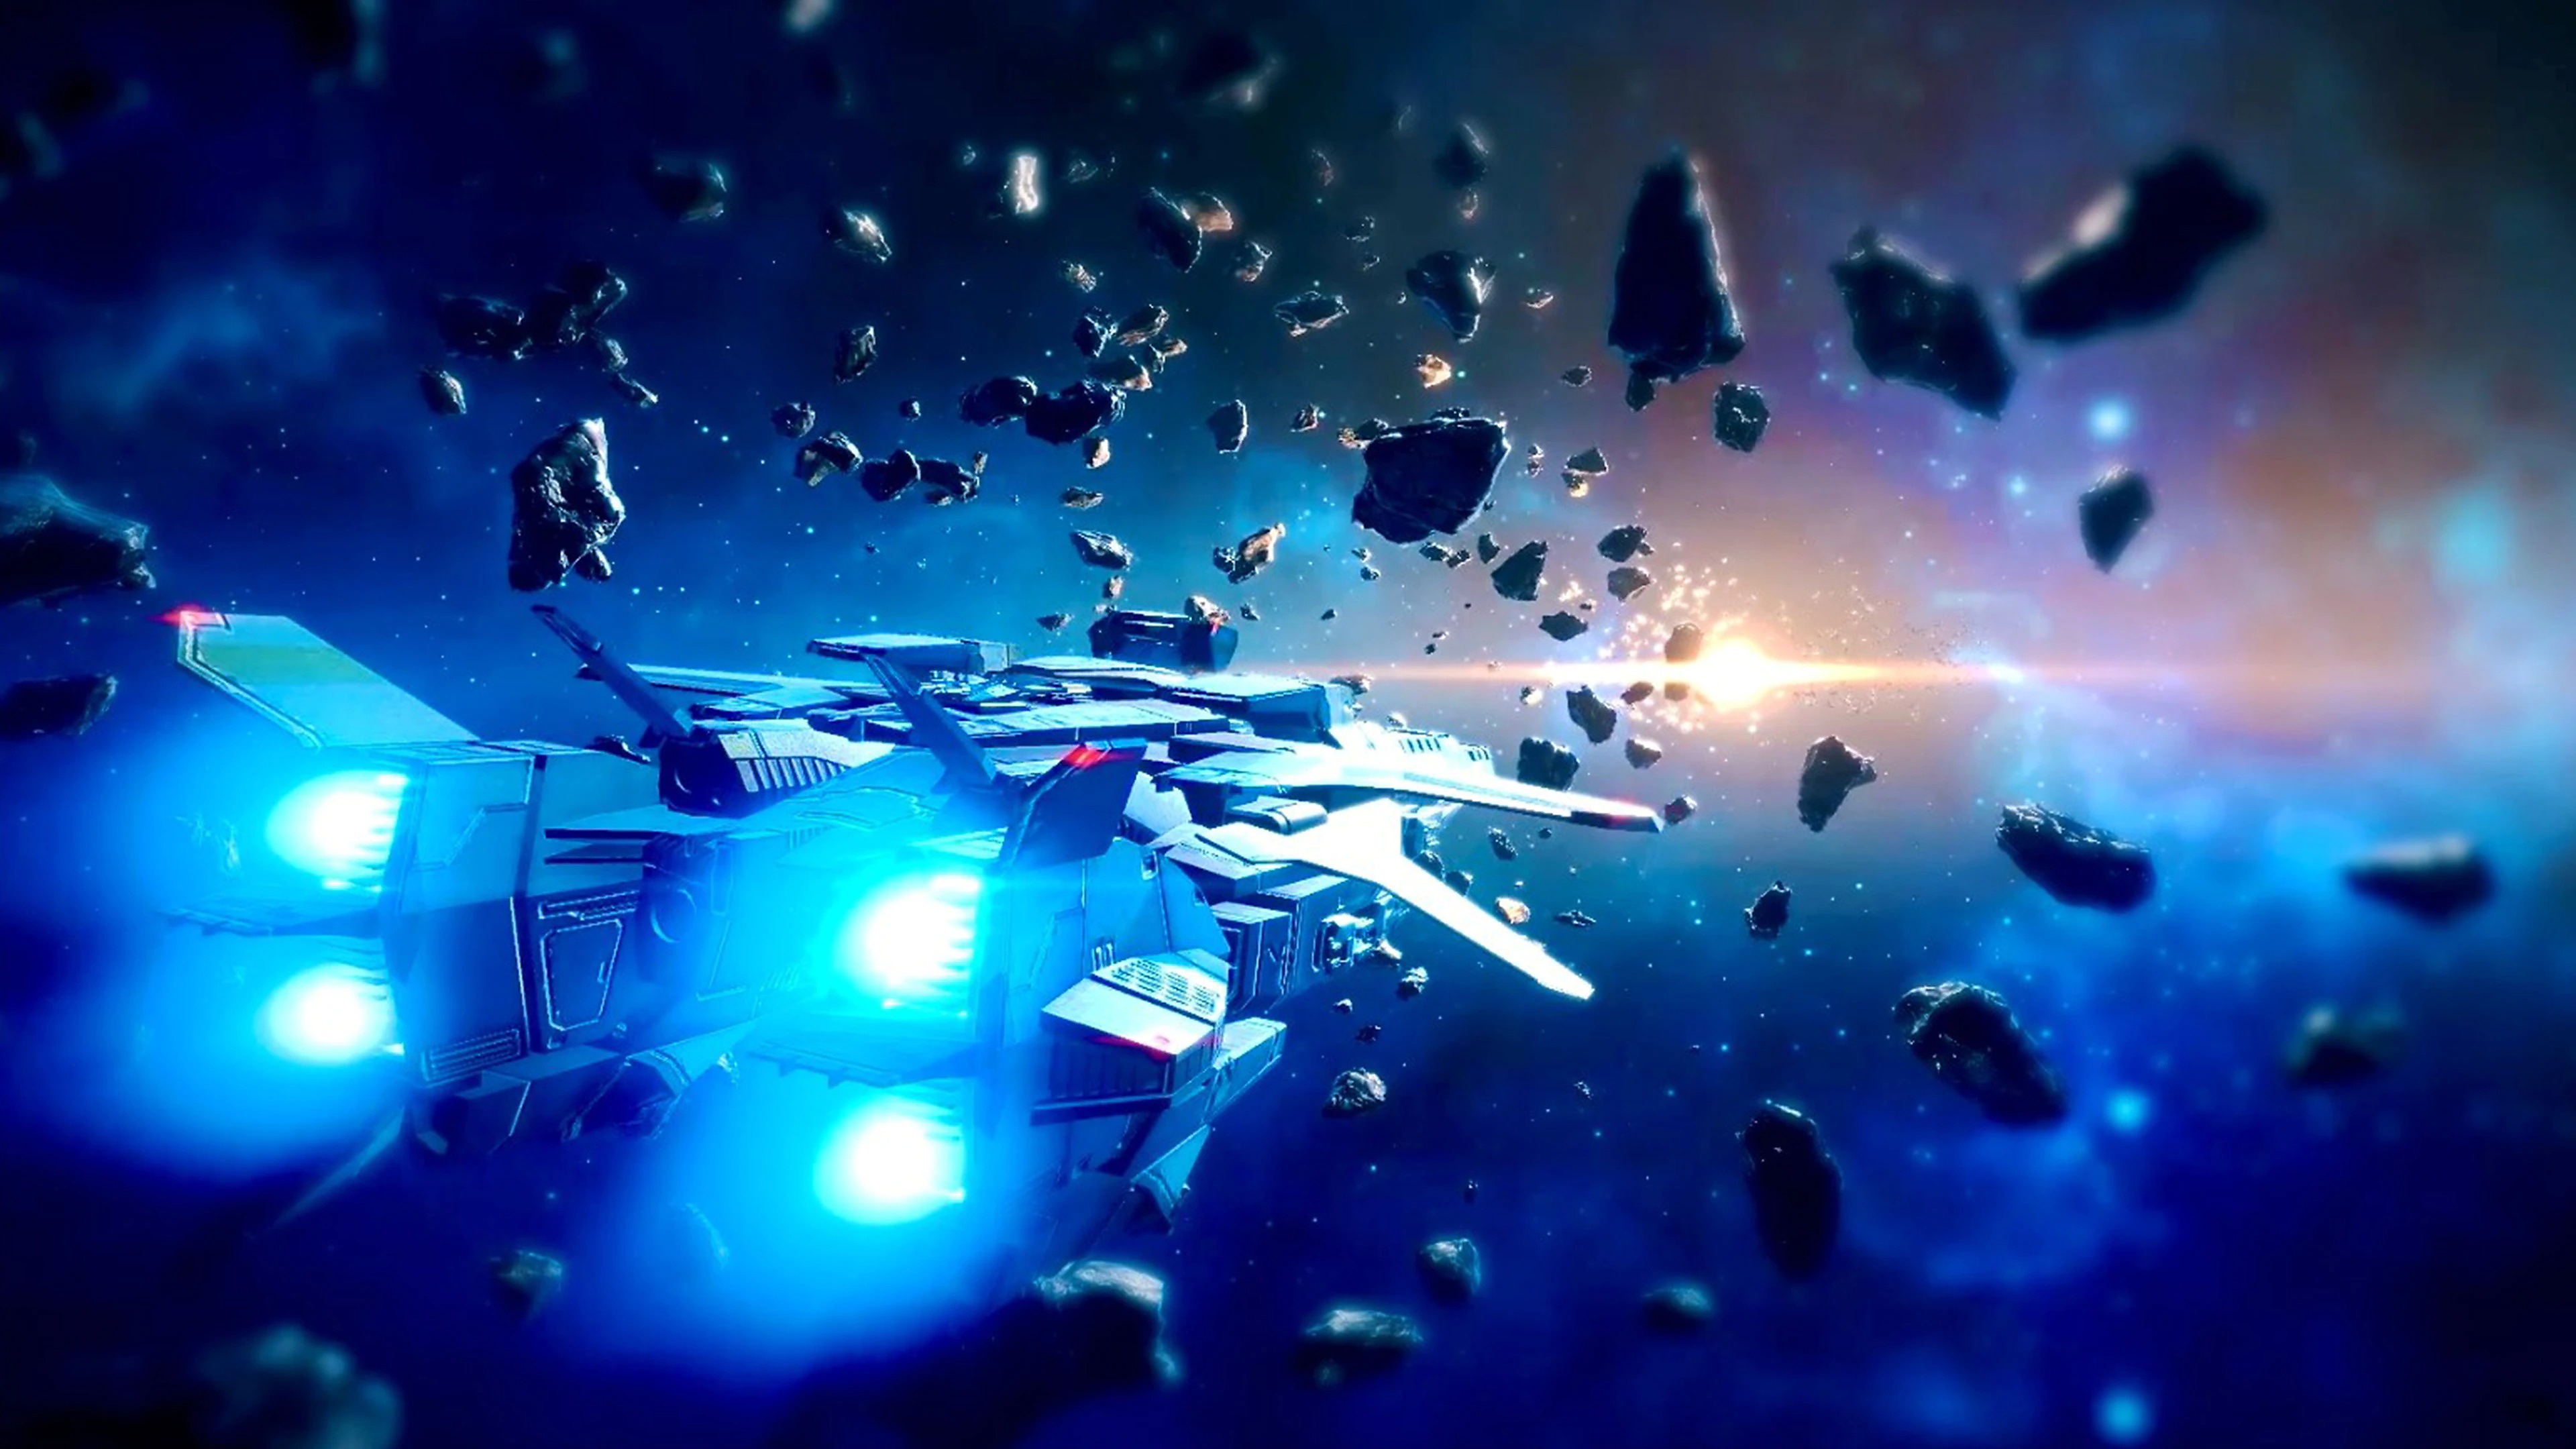 Relayer – snímek obrazovky zachycující vesmírnou loď prolétající vesmírem